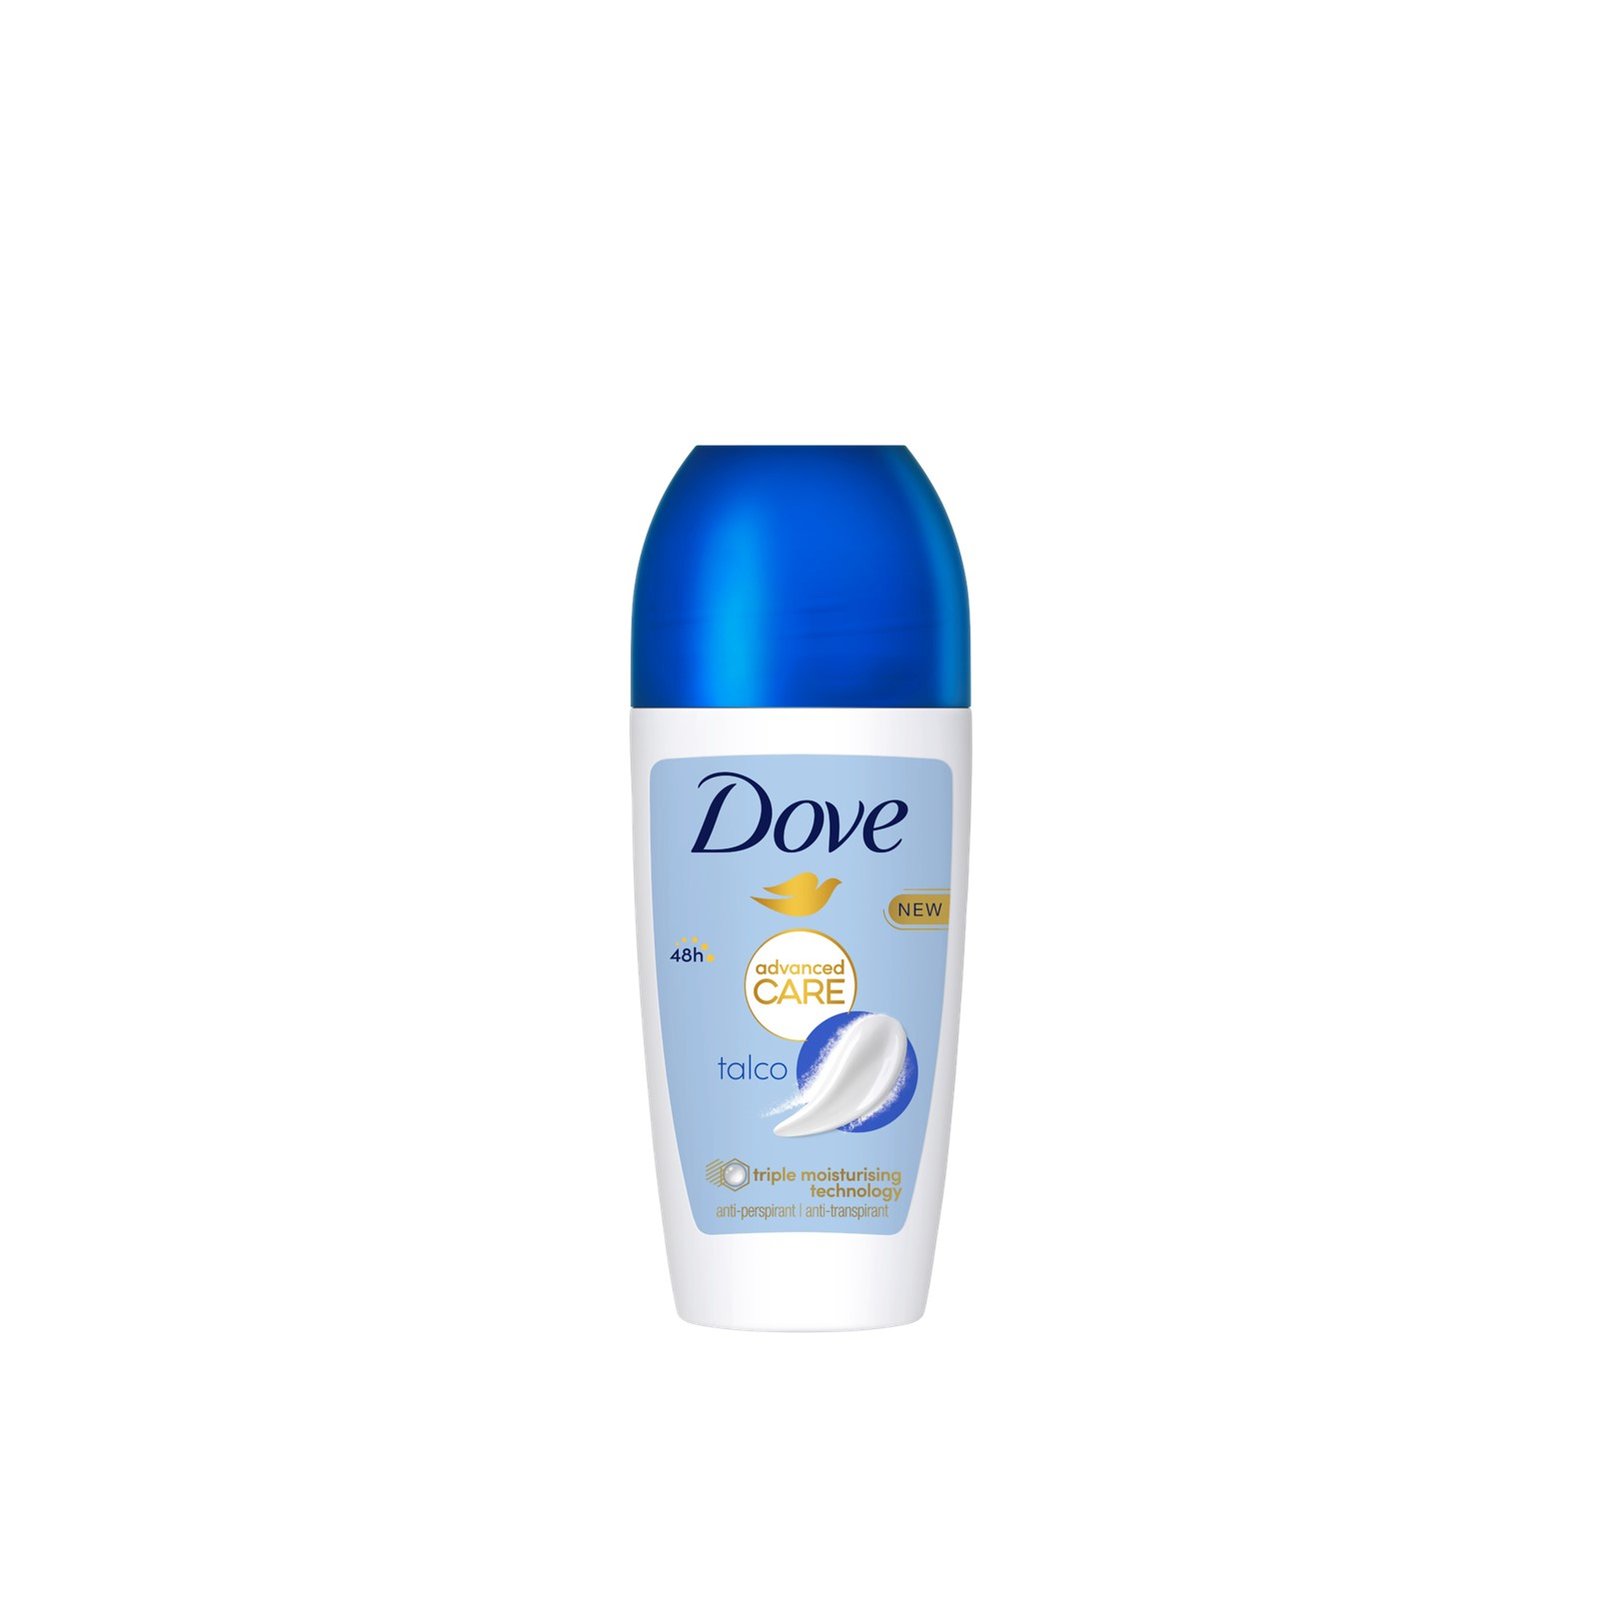 Dove Advanced Care Talco 48h Anti-Perspirant Deodorant Roll-on 50ml